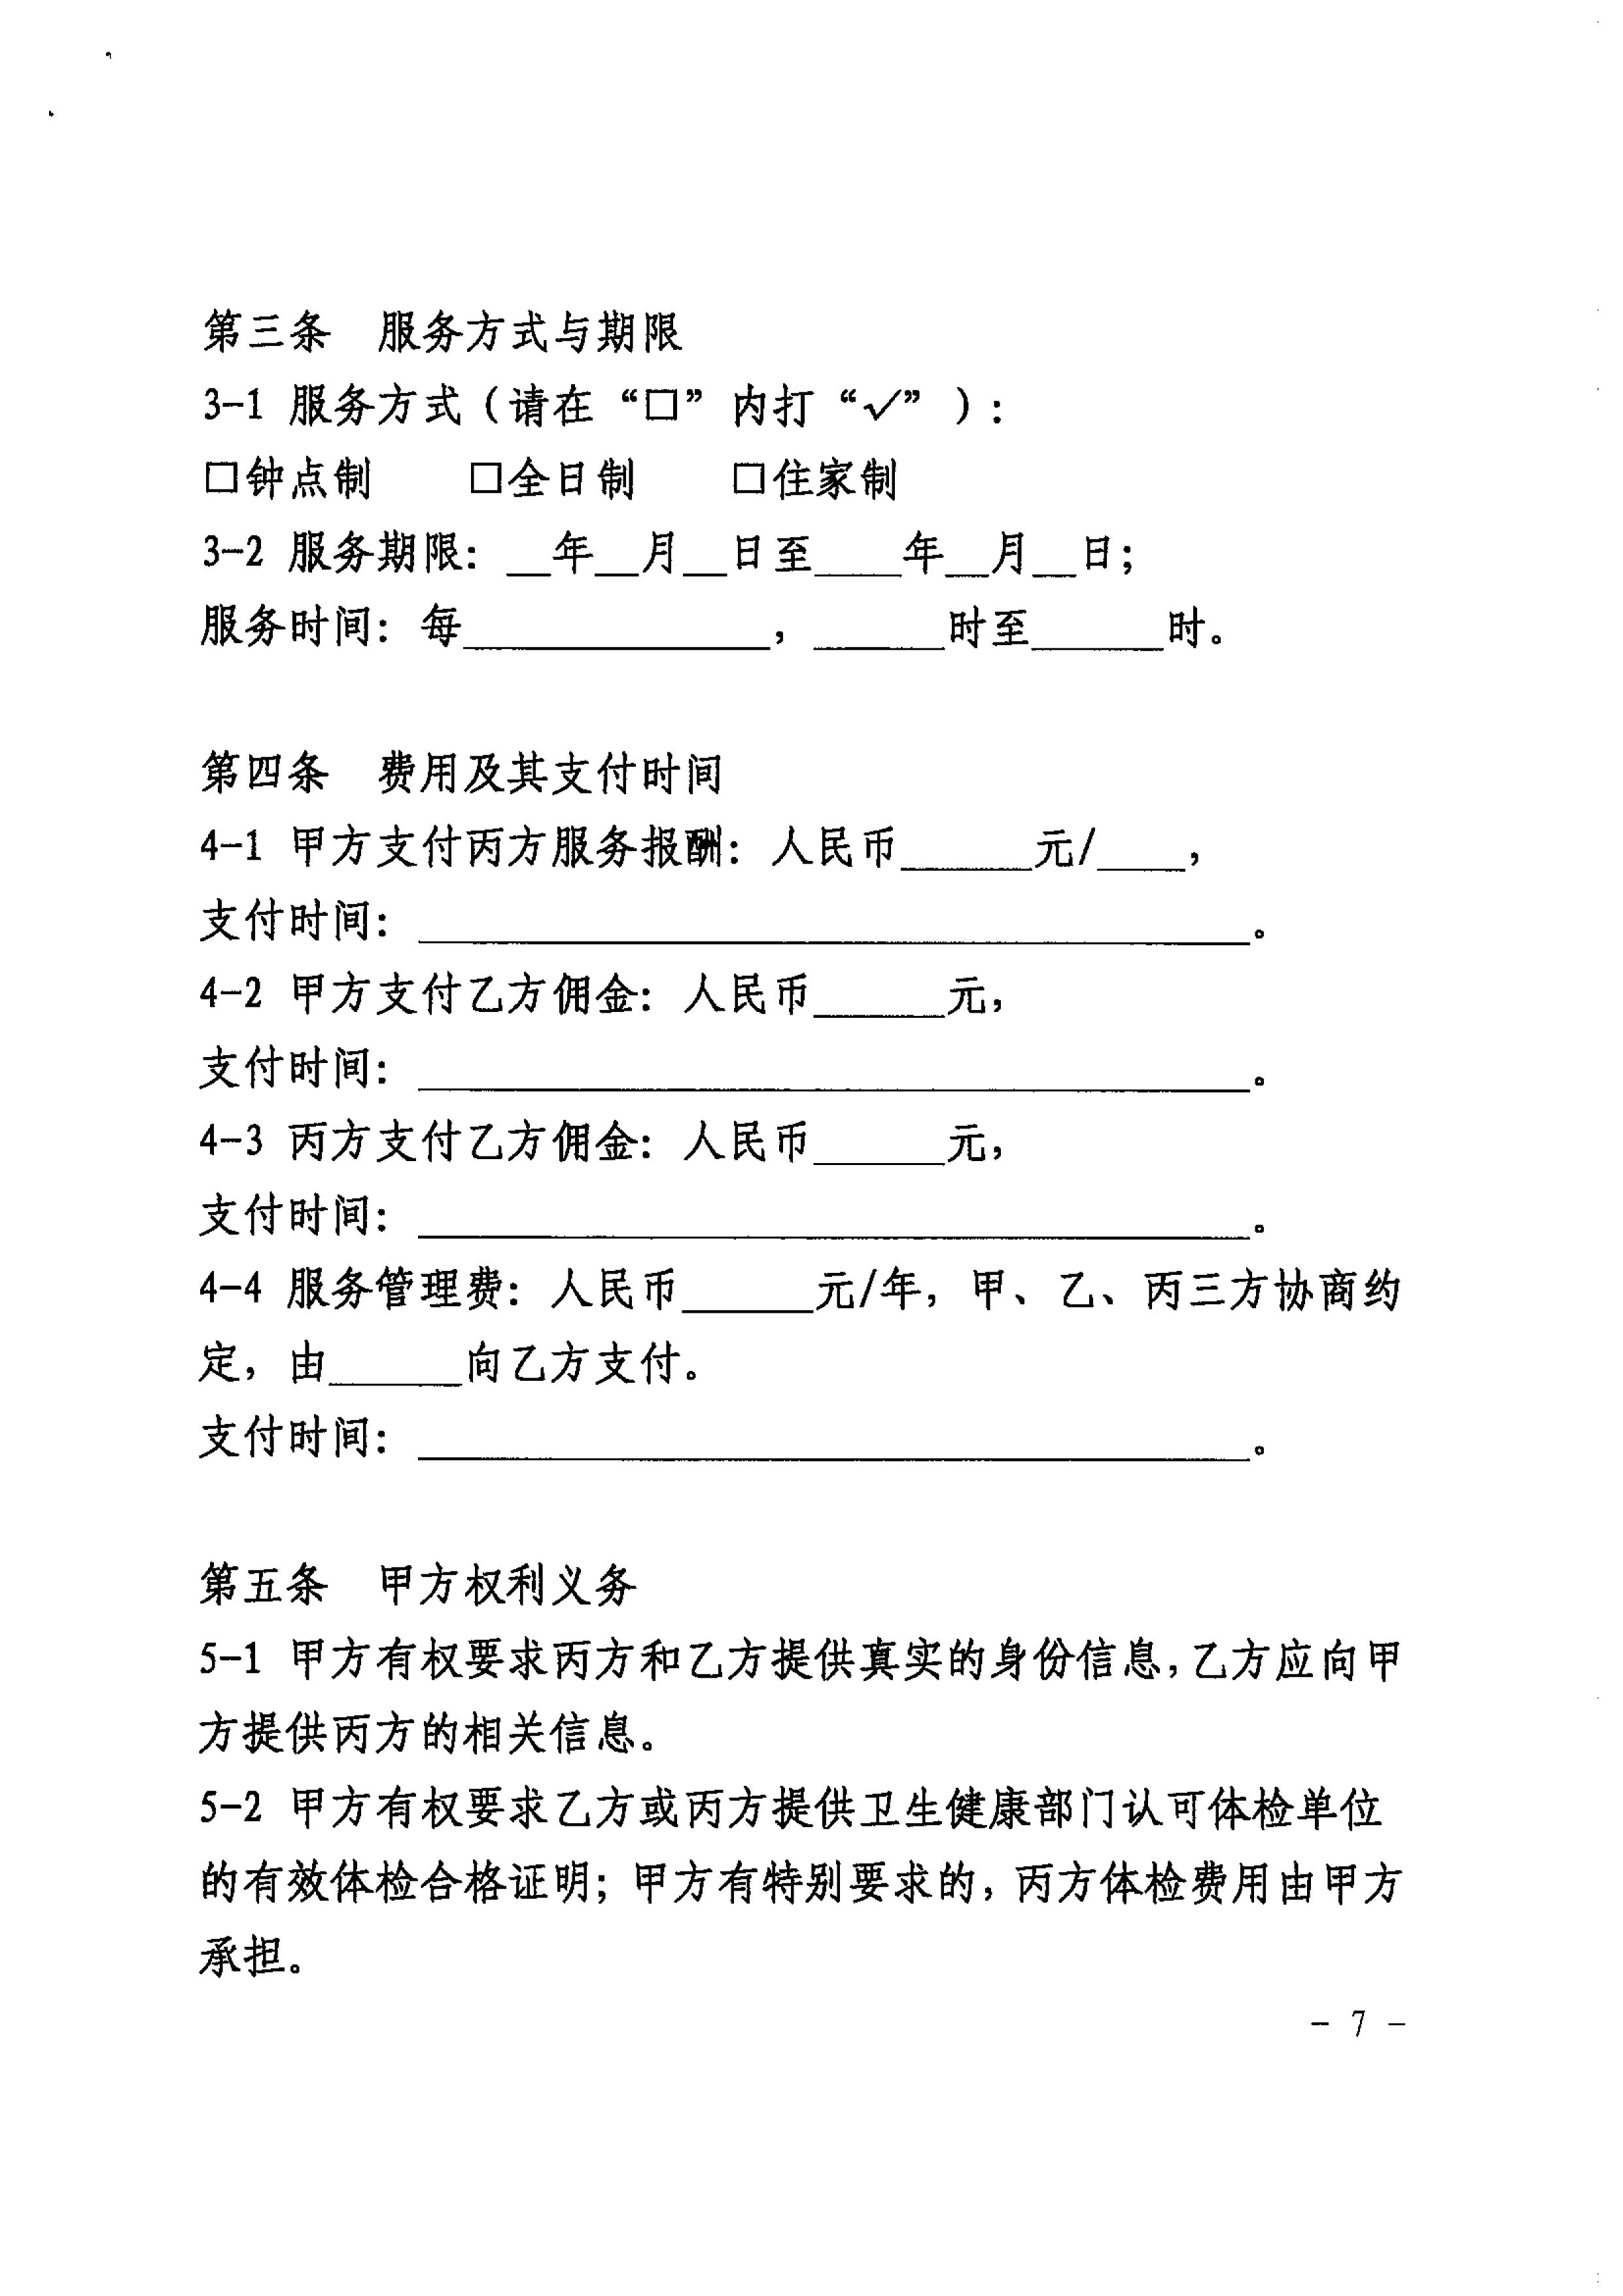 关于推广使用《上海市家政服务合同示范文本》的通知_07